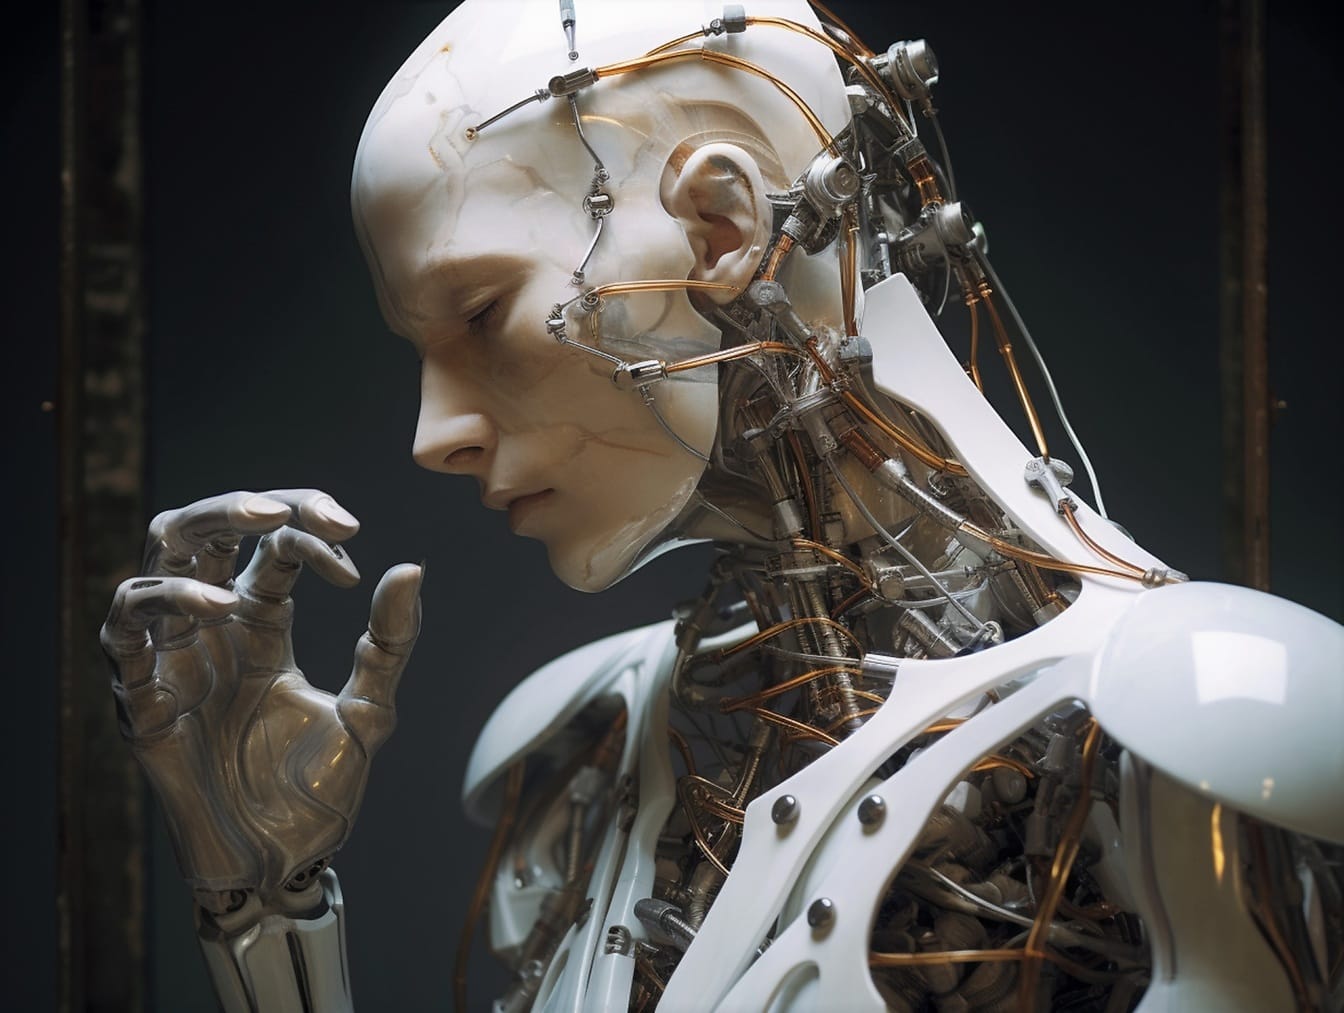 Μπεζ ανθρωποειδές ρομπότ με τεχνητή intelegence